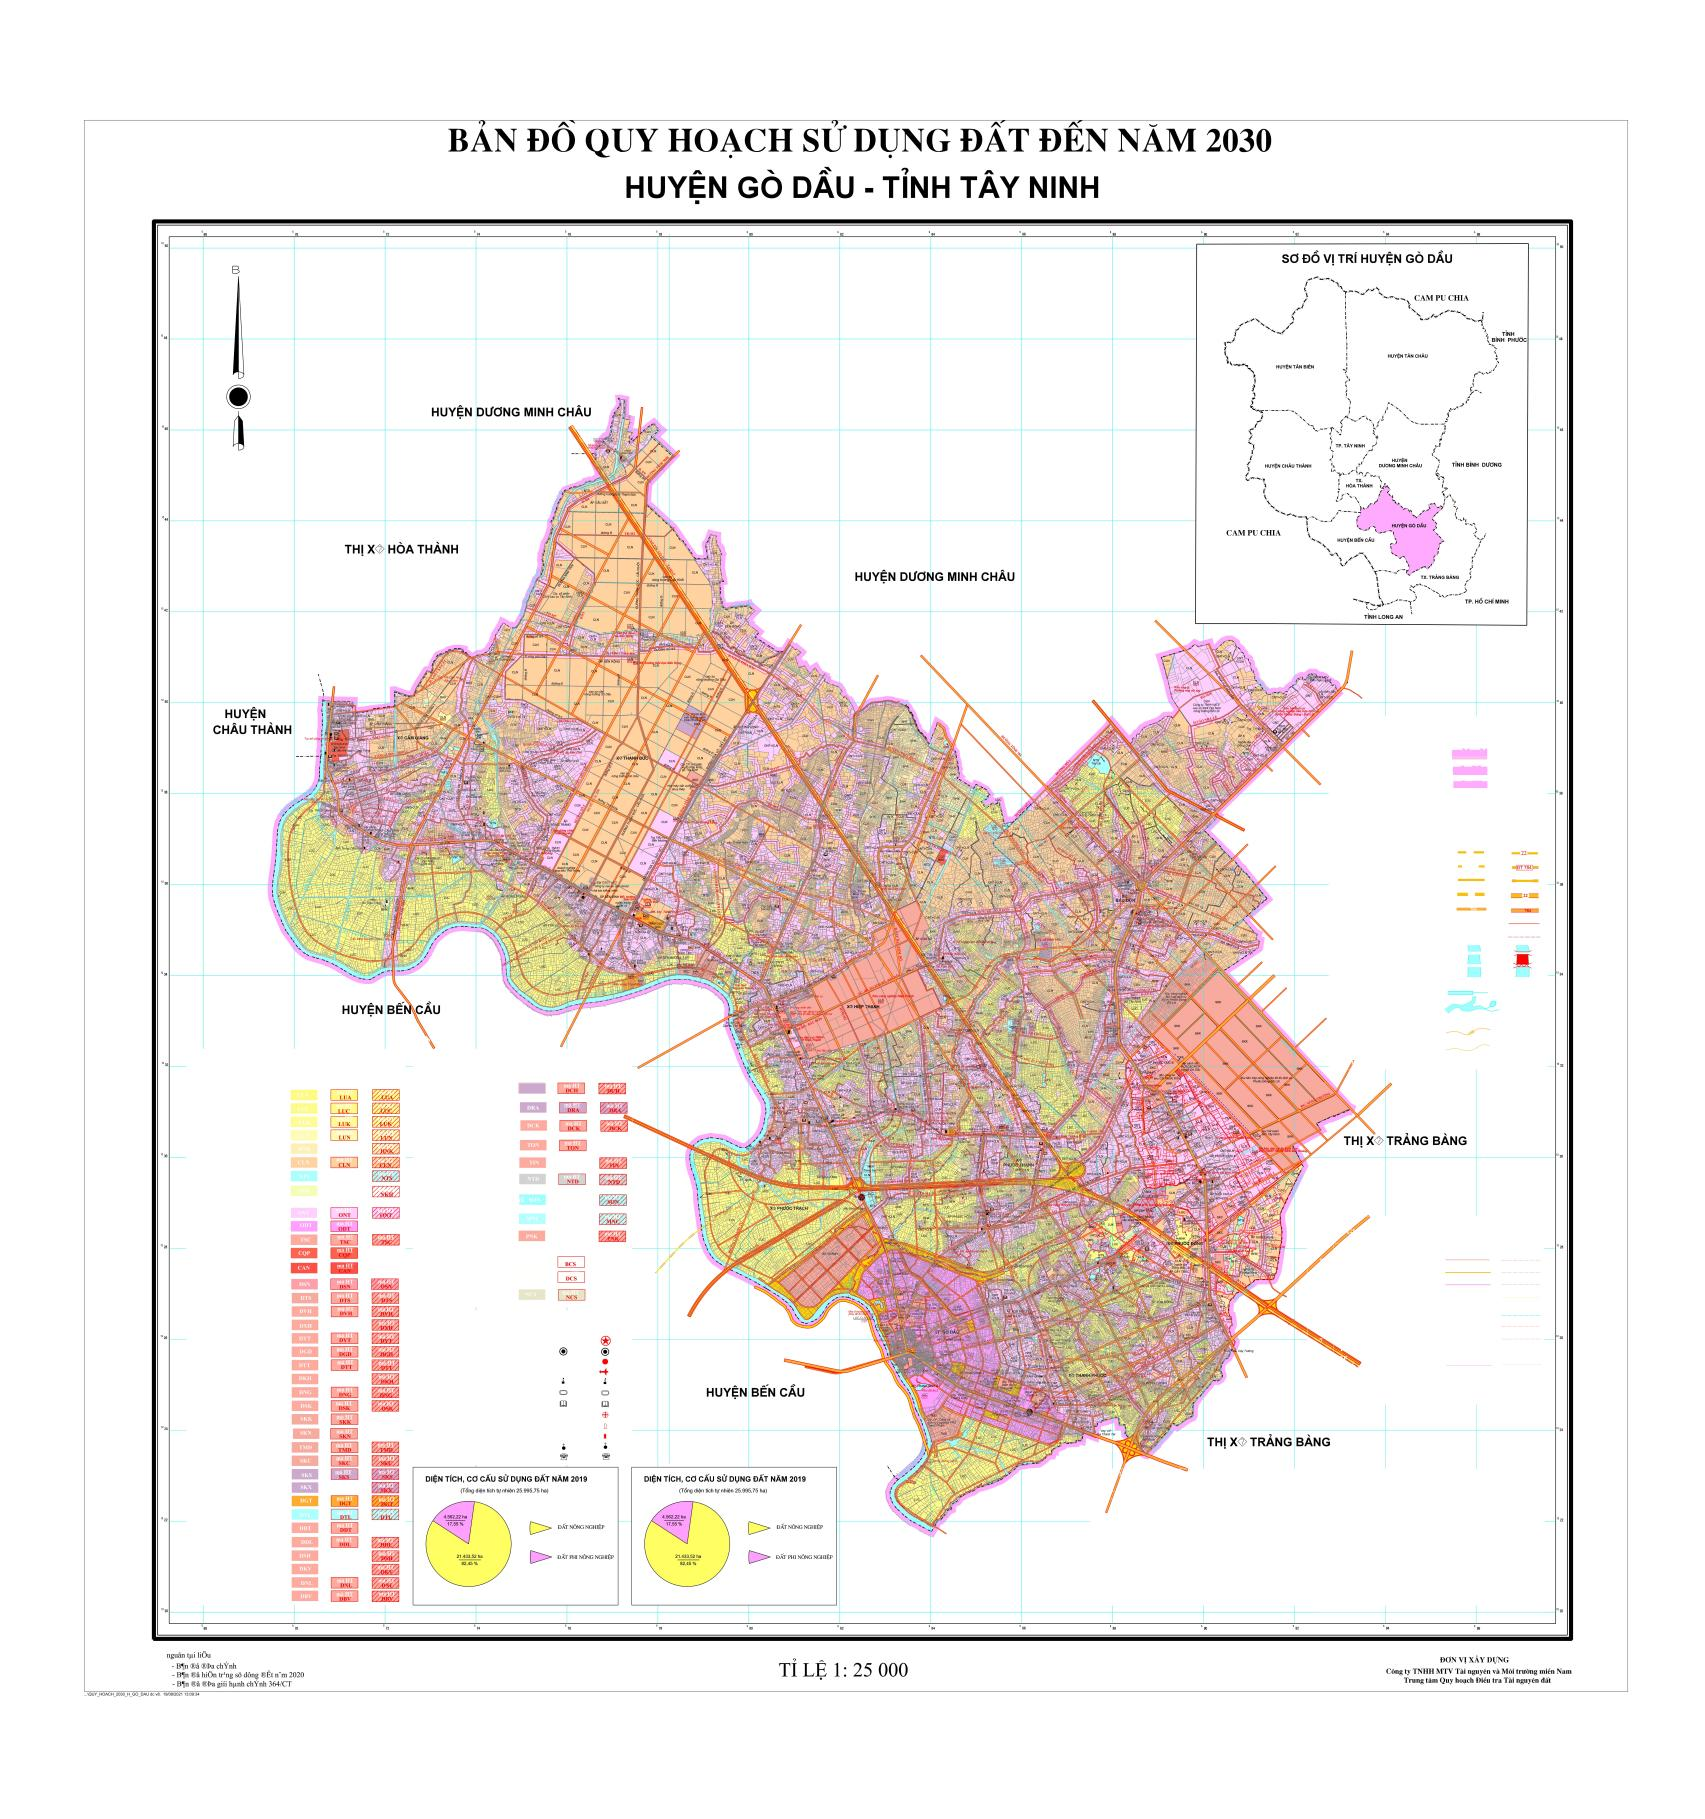 Bản đồ quy hoạch sử dụng đất huyện Gò Dầu, tỉnh Tây Ninh